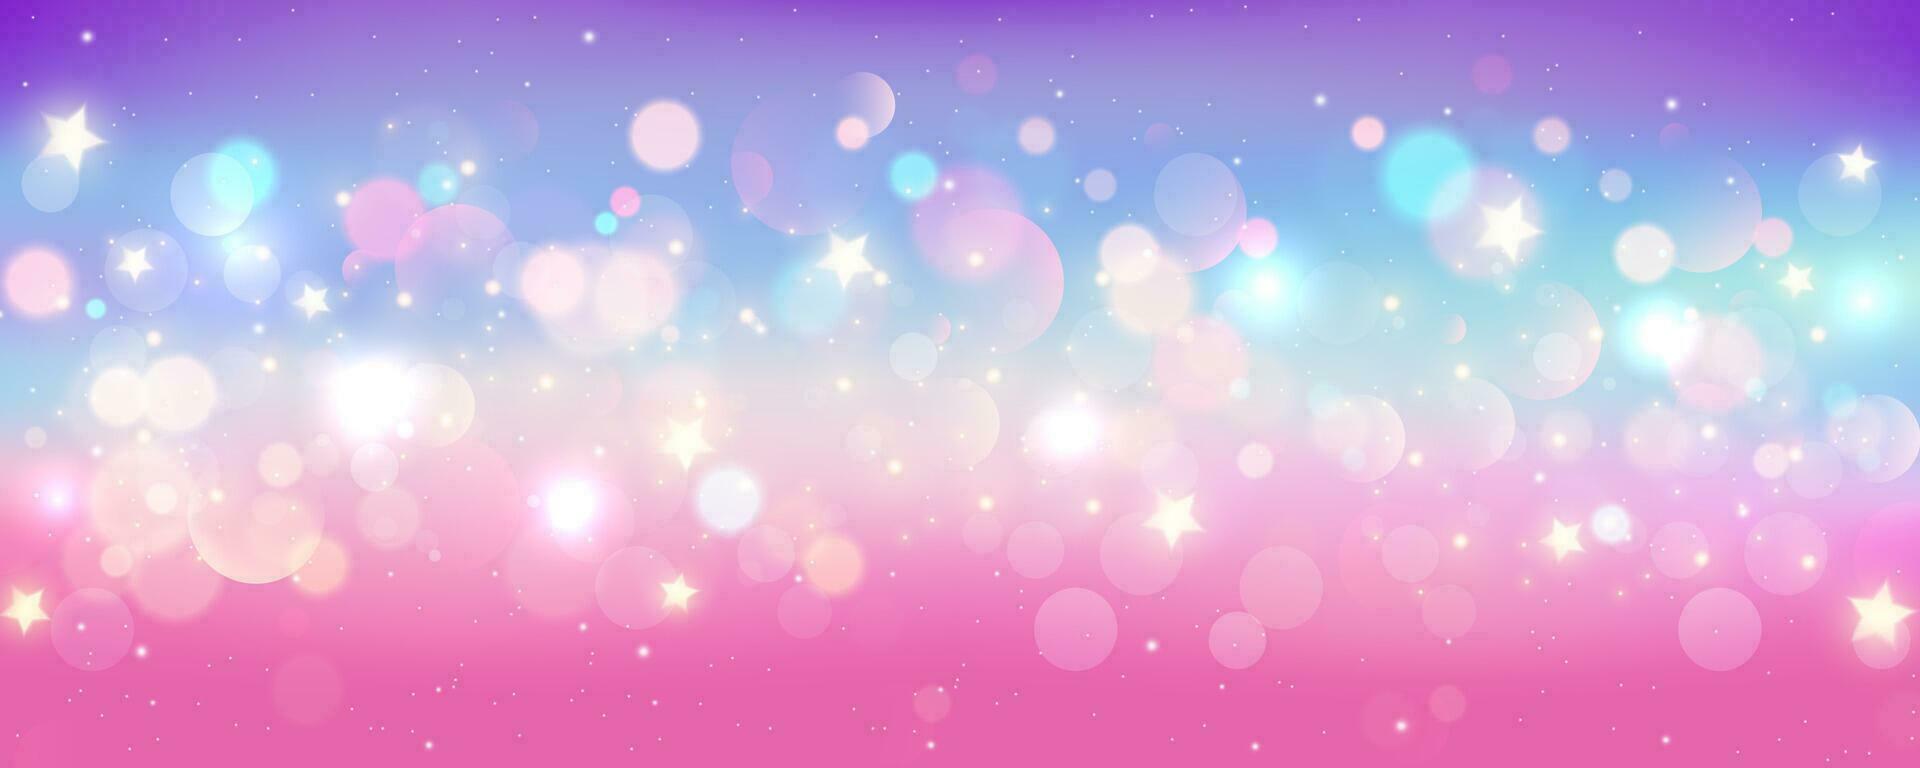 Regenbogen Einhorn Hintergrund. Pastell- funkeln Rosa Fantasie Galaxis. Magie Meerjungfrau Himmel mit Bokeh. holographisch kawaii abstrakt Raum mit Sterne und funkelt. Vektor